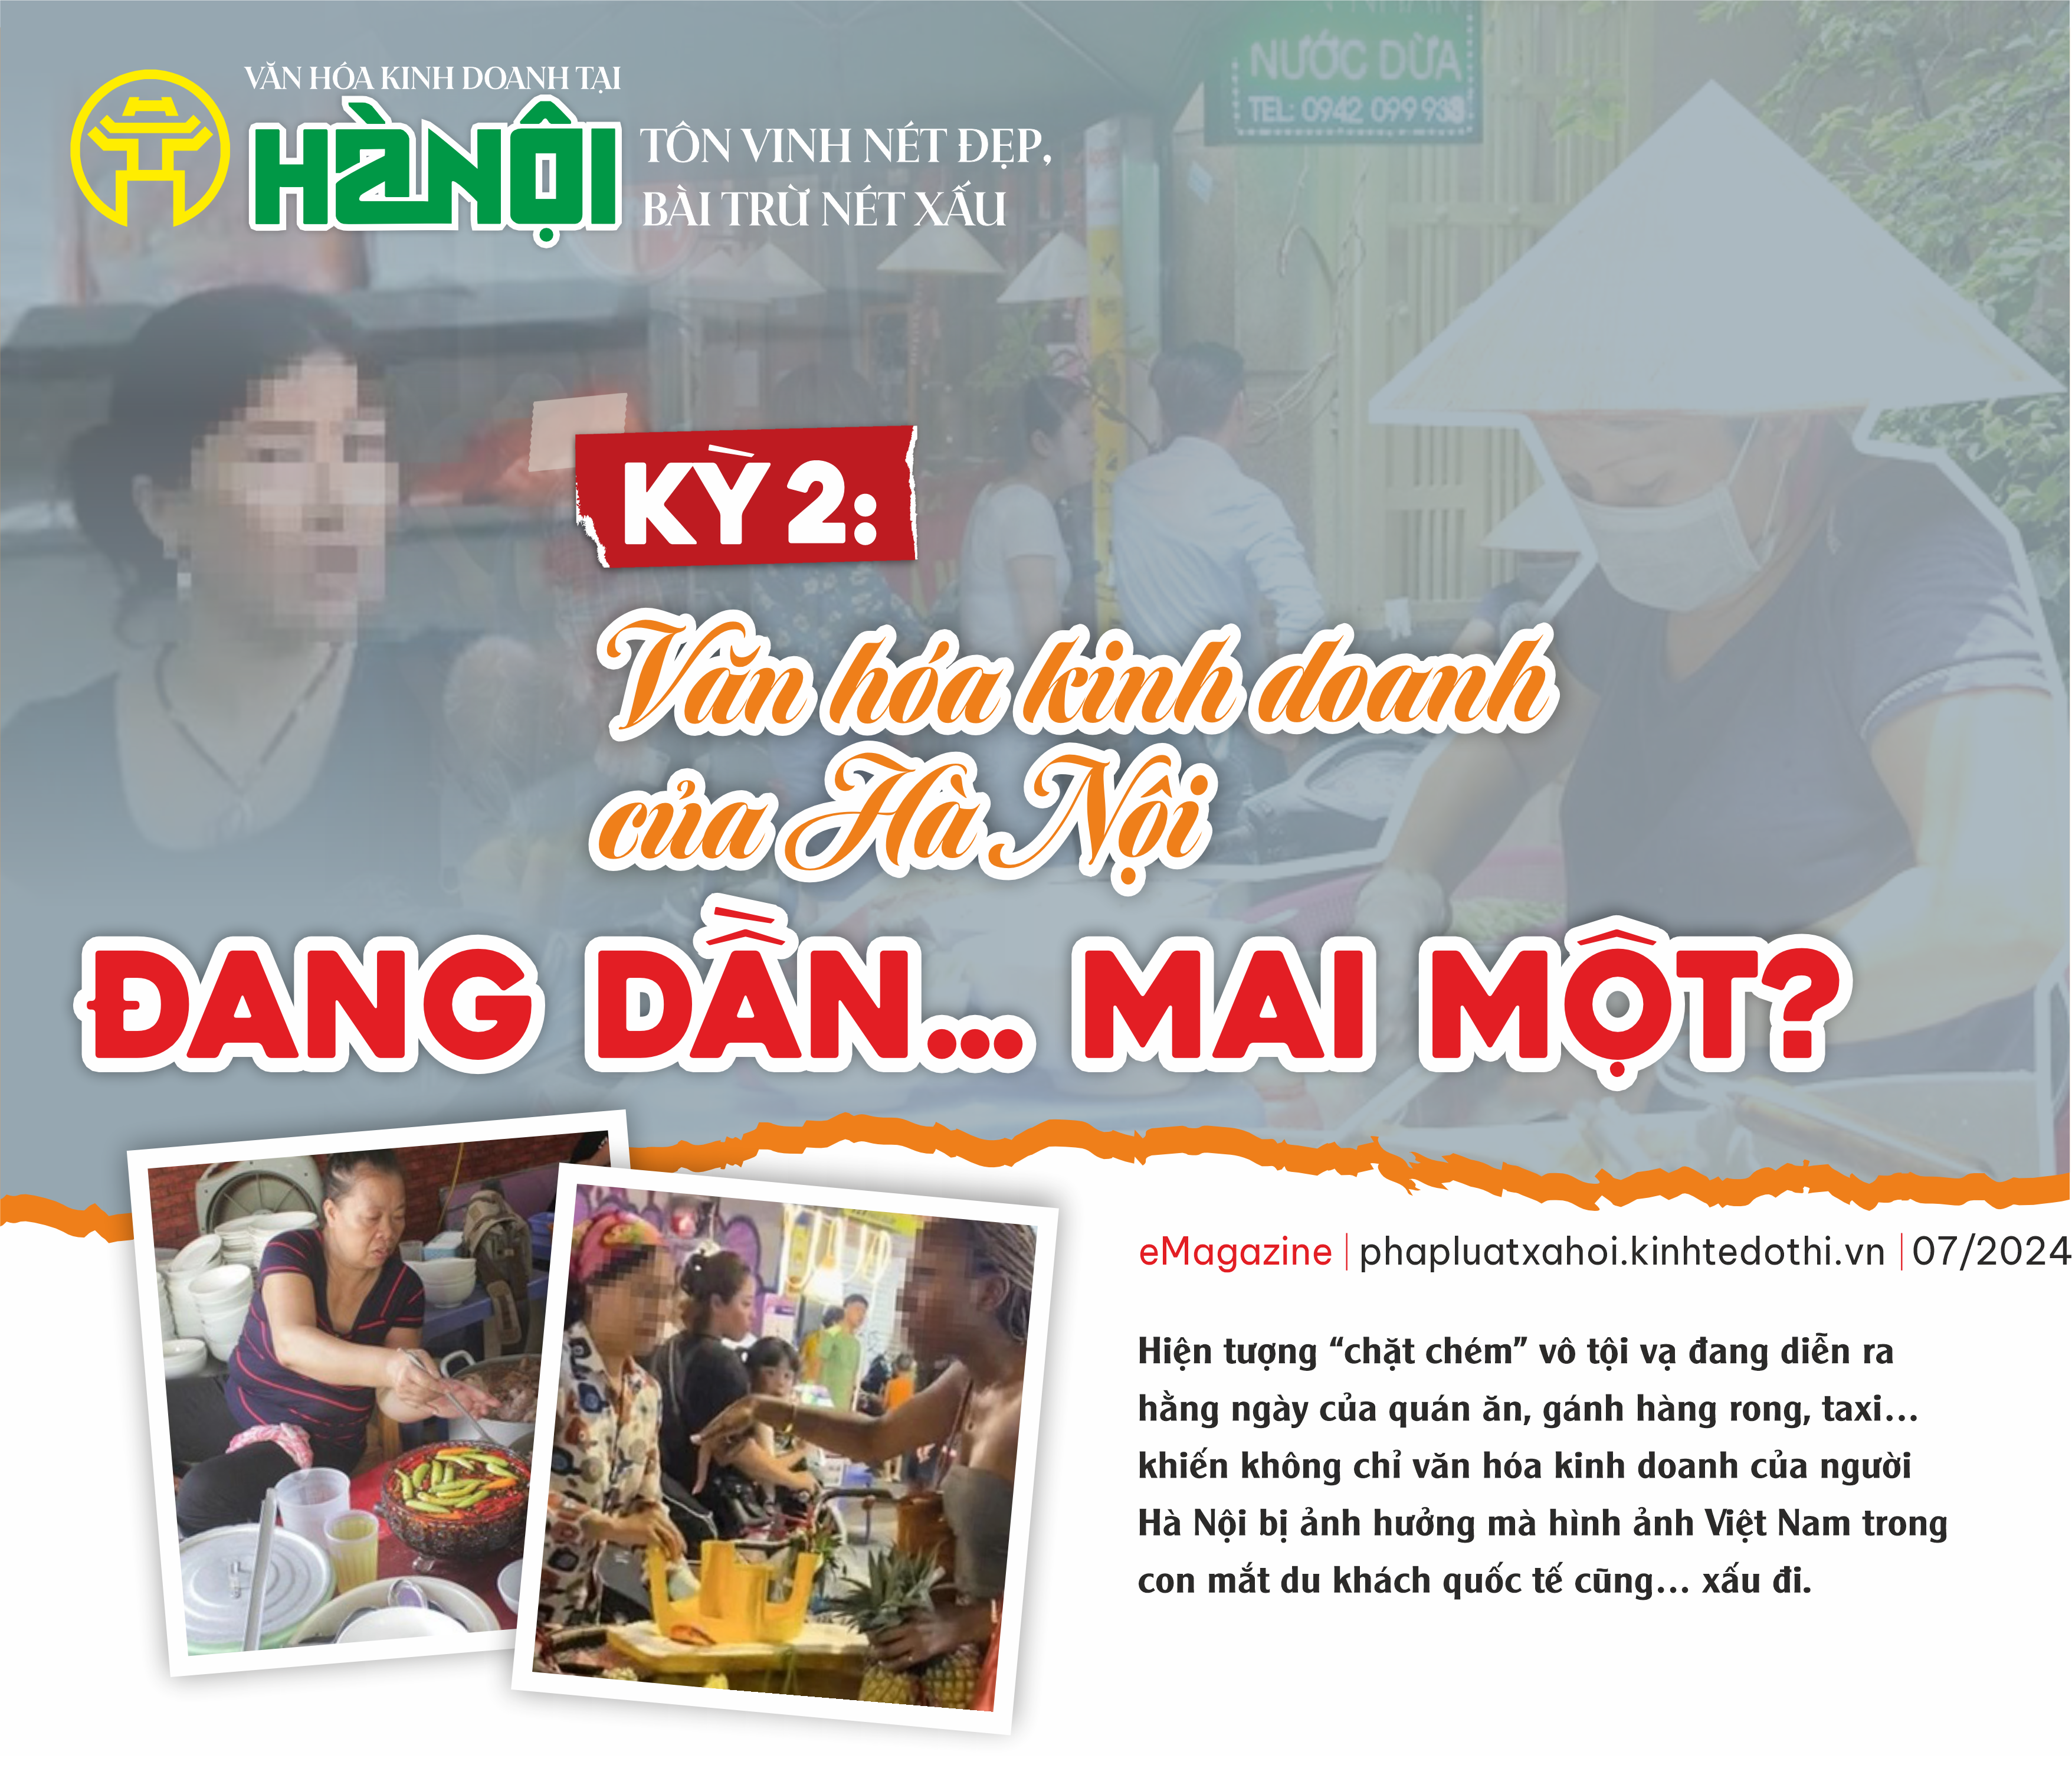 Kỳ 2: Văn hóa kinh doanh của Hà Nội đang dần…mai một?